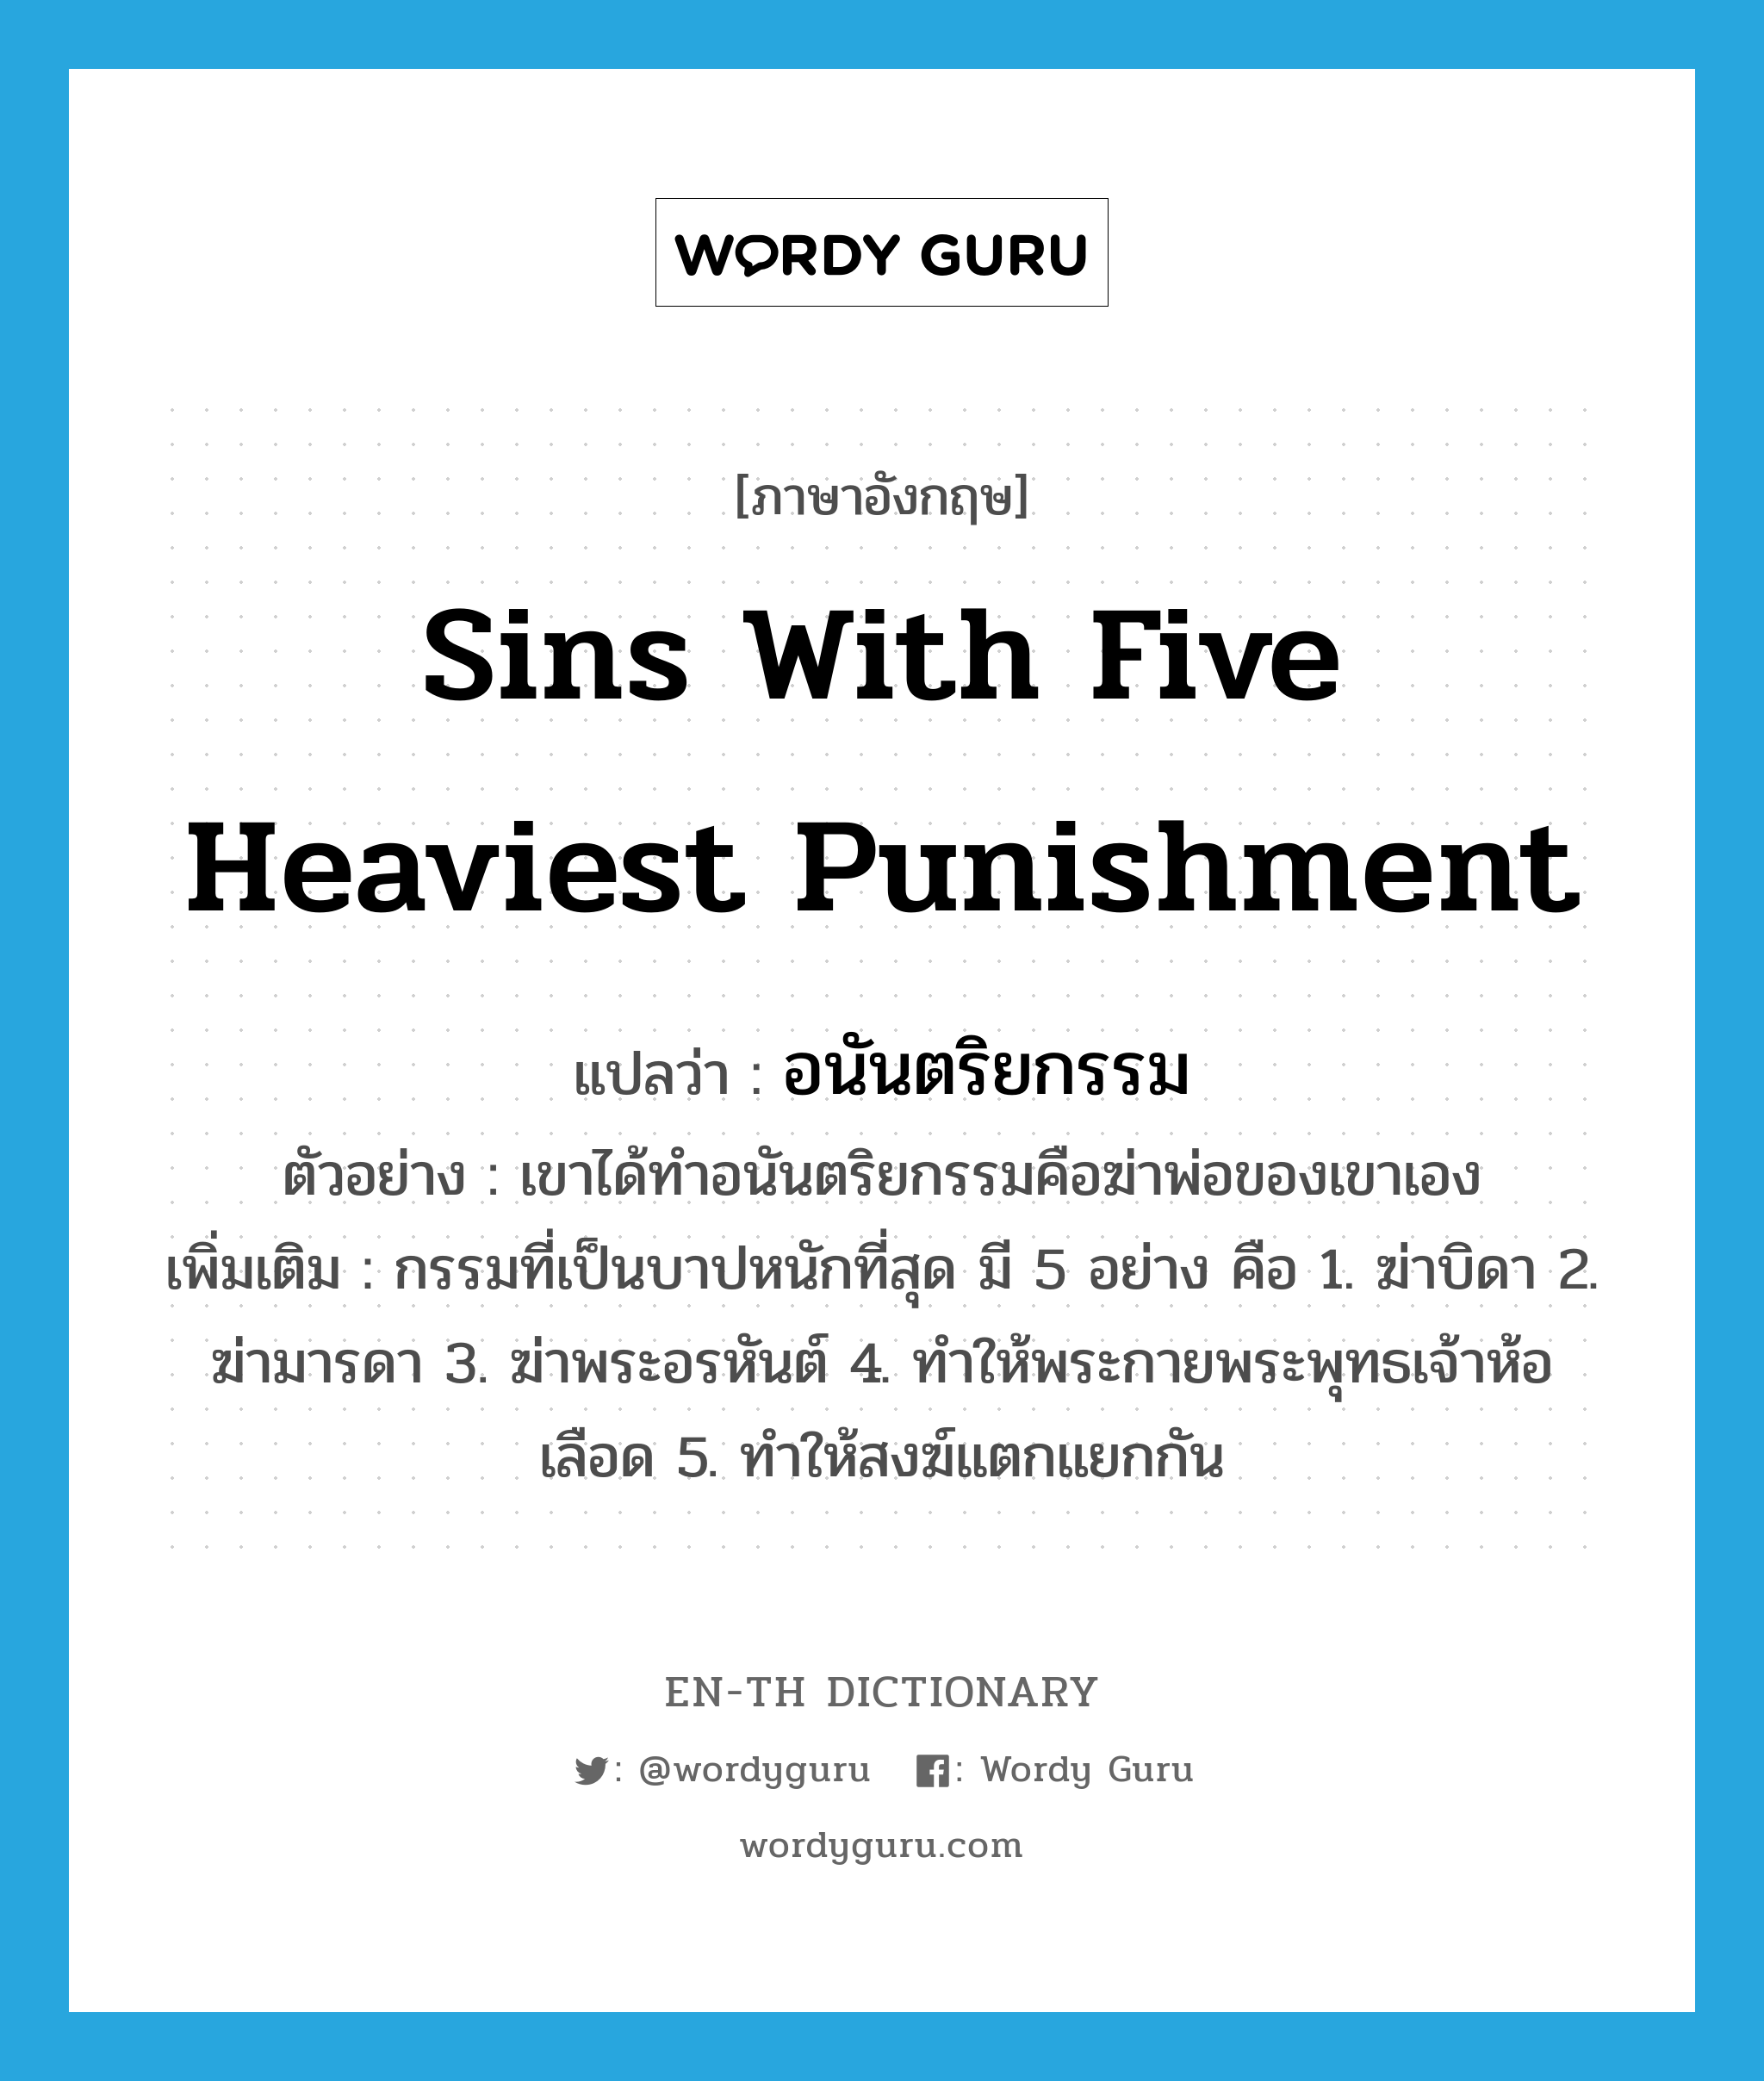 sins with five heaviest punishment แปลว่า?, คำศัพท์ภาษาอังกฤษ sins with five heaviest punishment แปลว่า อนันตริยกรรม ประเภท N ตัวอย่าง เขาได้ทำอนันตริยกรรมคือฆ่าพ่อของเขาเอง เพิ่มเติม กรรมที่เป็นบาปหนักที่สุด มี 5 อย่าง คือ 1. ฆ่าบิดา 2. ฆ่ามารดา 3. ฆ่าพระอรหันต์ 4. ทำให้พระกายพระพุทธเจ้าห้อเลือด 5. ทำให้สงฆ์แตกแยกกัน หมวด N